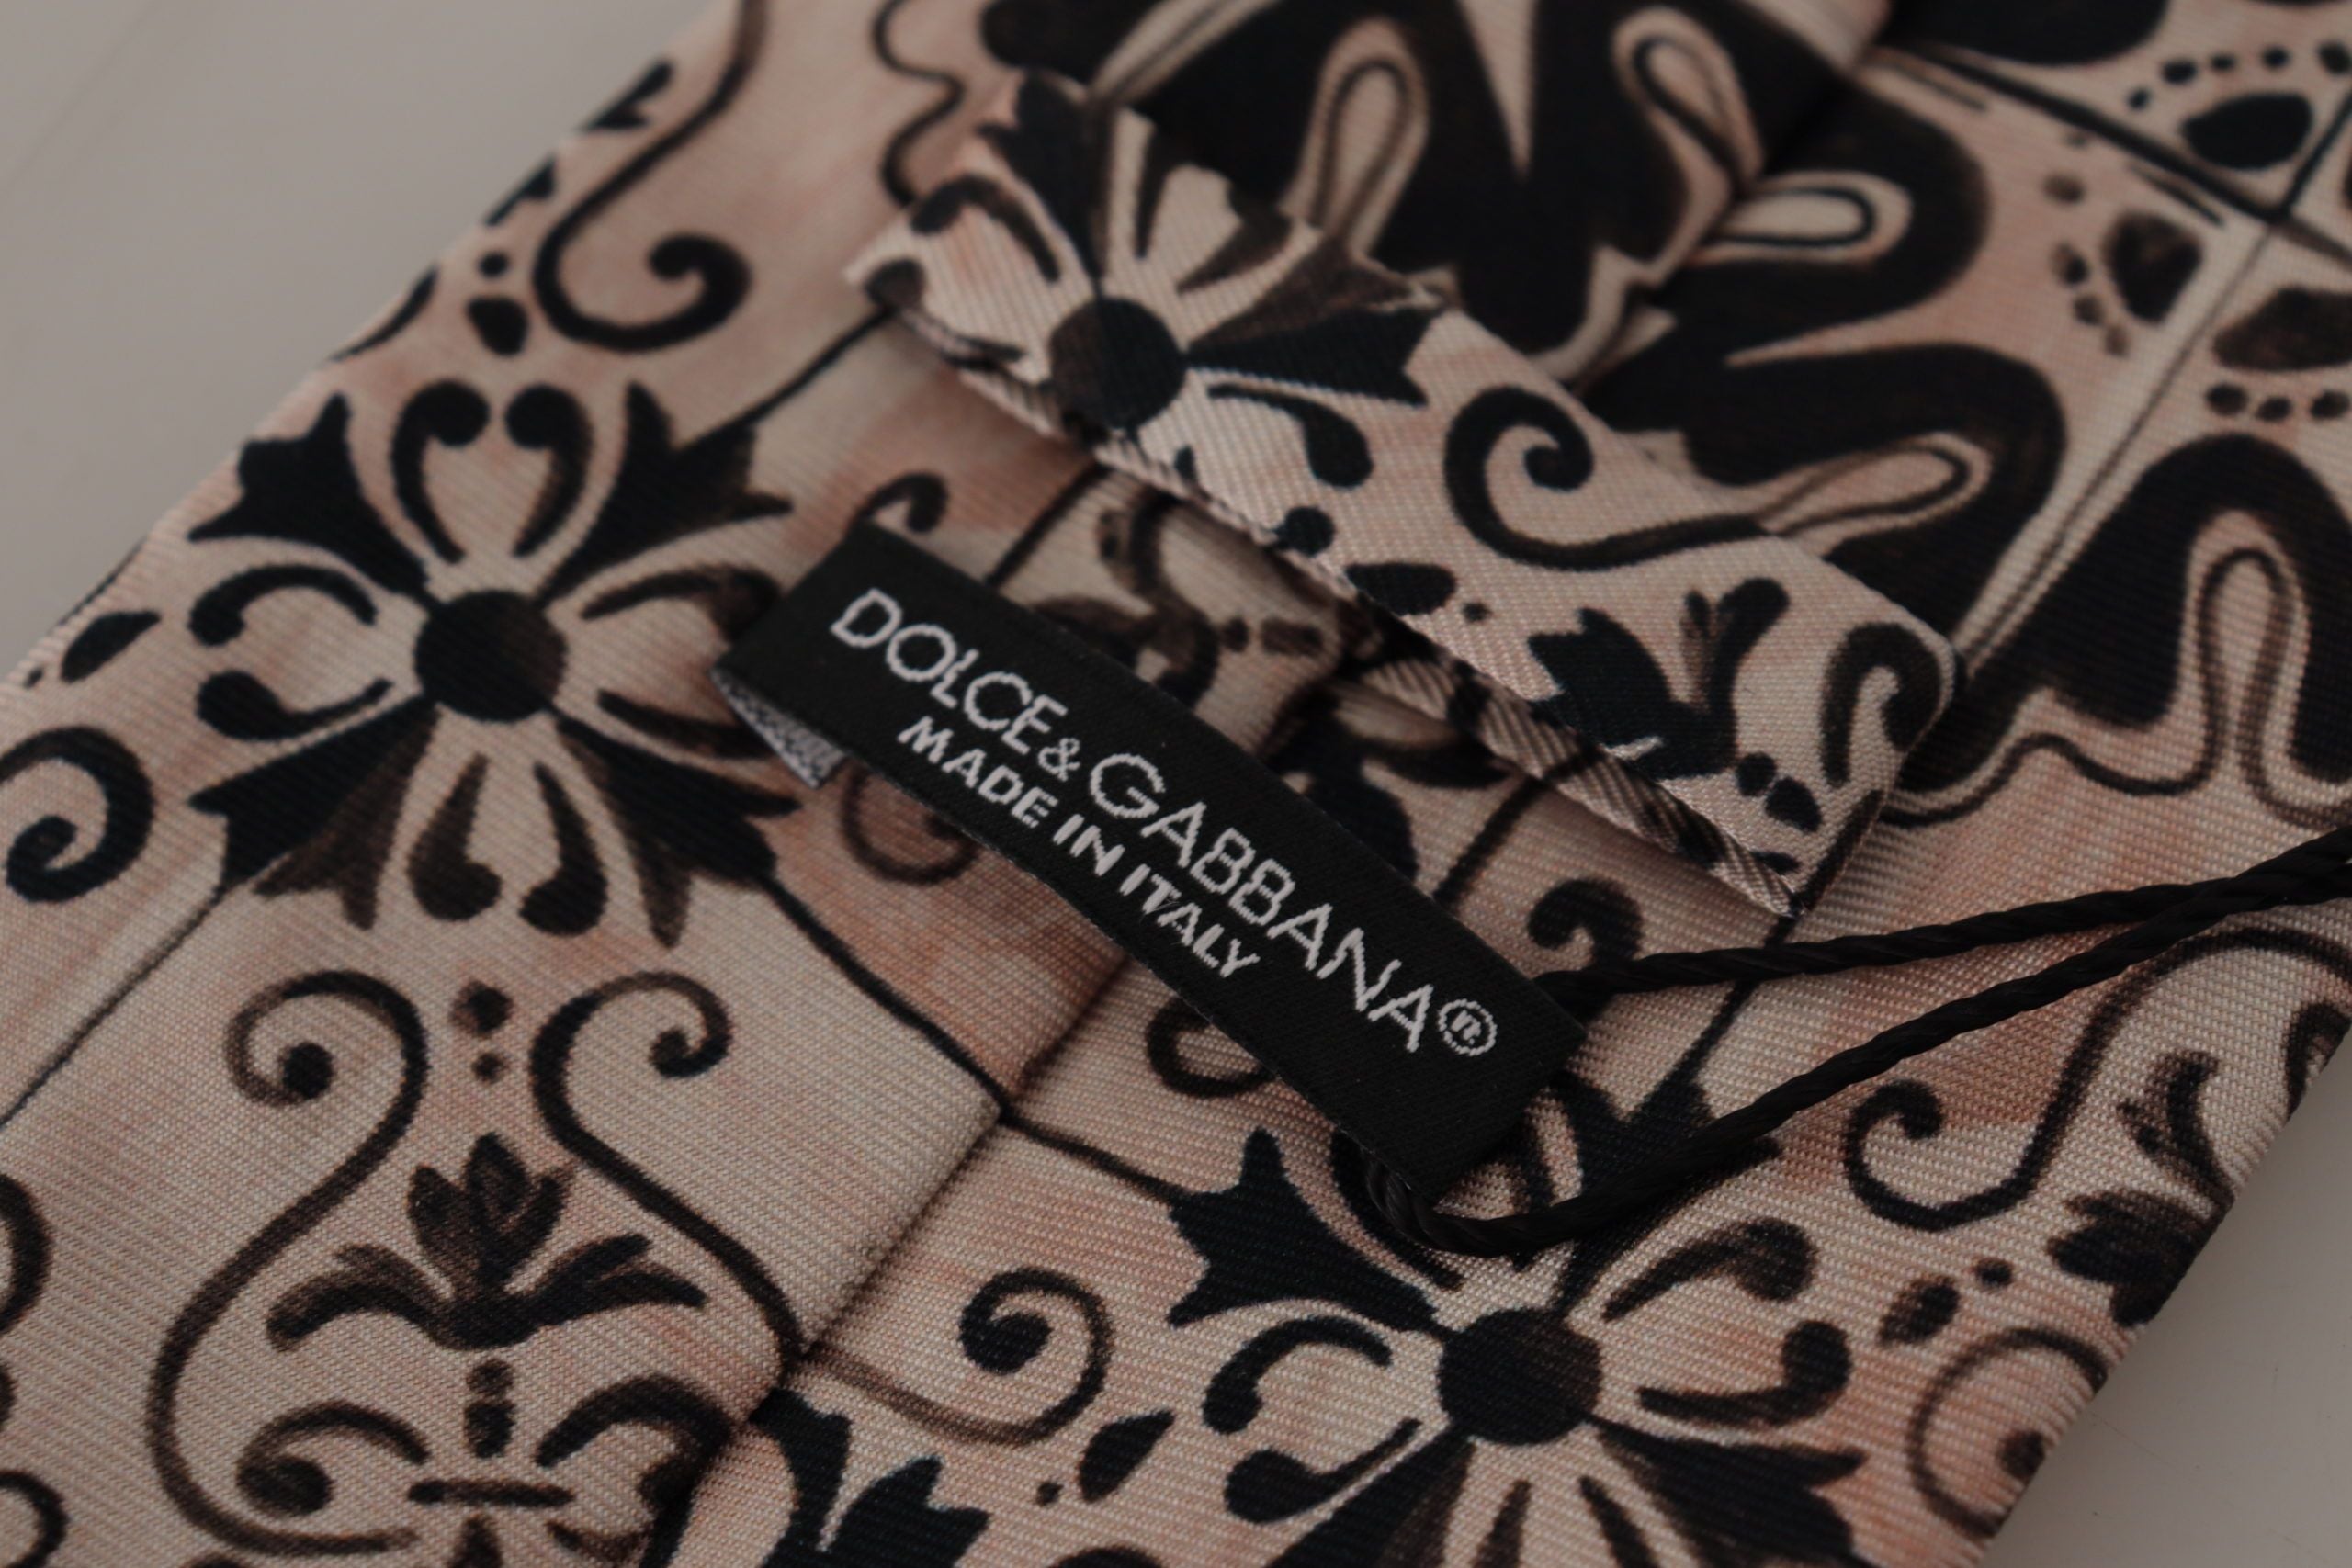 Dolce & Gabbana Stunning Silk Gentleman's Tie in Rich Brown